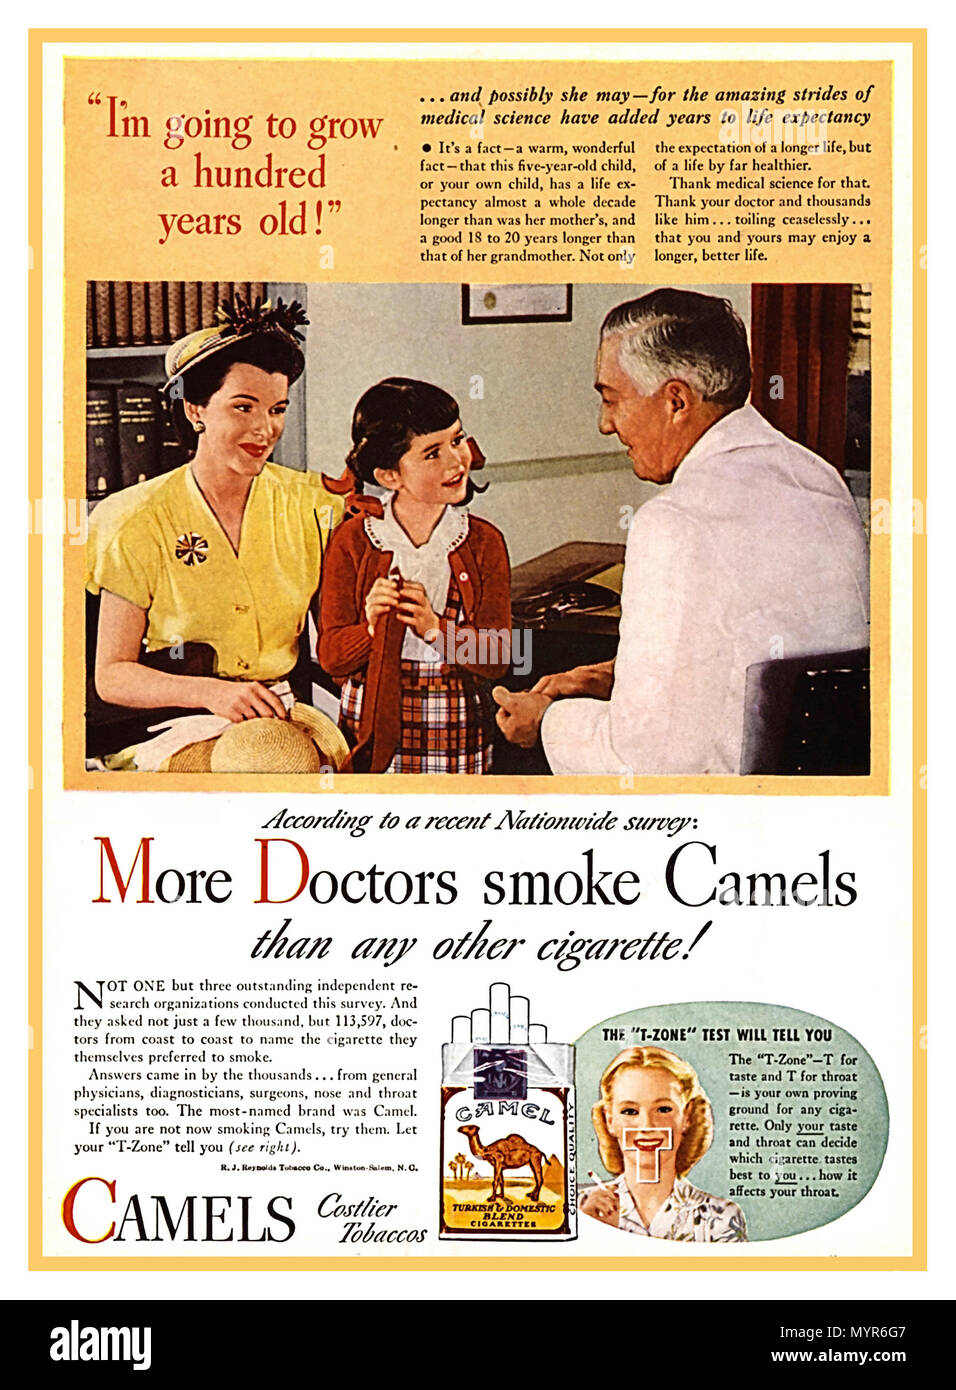 1940 Vintage Fumeurs Appuyez sur Poster Publicité En 1946, le RJ Reynolds Tobacco Company a lancé une nouvelle grande campagne de publicité pour les chameaux. Travaille à établir une position dominante dans un marché hautement concurrentiel, Reynolds a concentré sa nouvelle campagne sur le slogan, "plus de médecins fument des chameaux que n'importe quelle autre cigarette" sur la base de plus de 7 000 articles liés à l'usage du tabac et la maladie disponibles à ce moment dans la littérature biomédicale, le Comité consultatif a conclu que l'usage du tabac était une cause de cancer du poumon avec cela, les mots "fumer tue" étaient alors en marque la prise de conscience du public. Banque D'Images